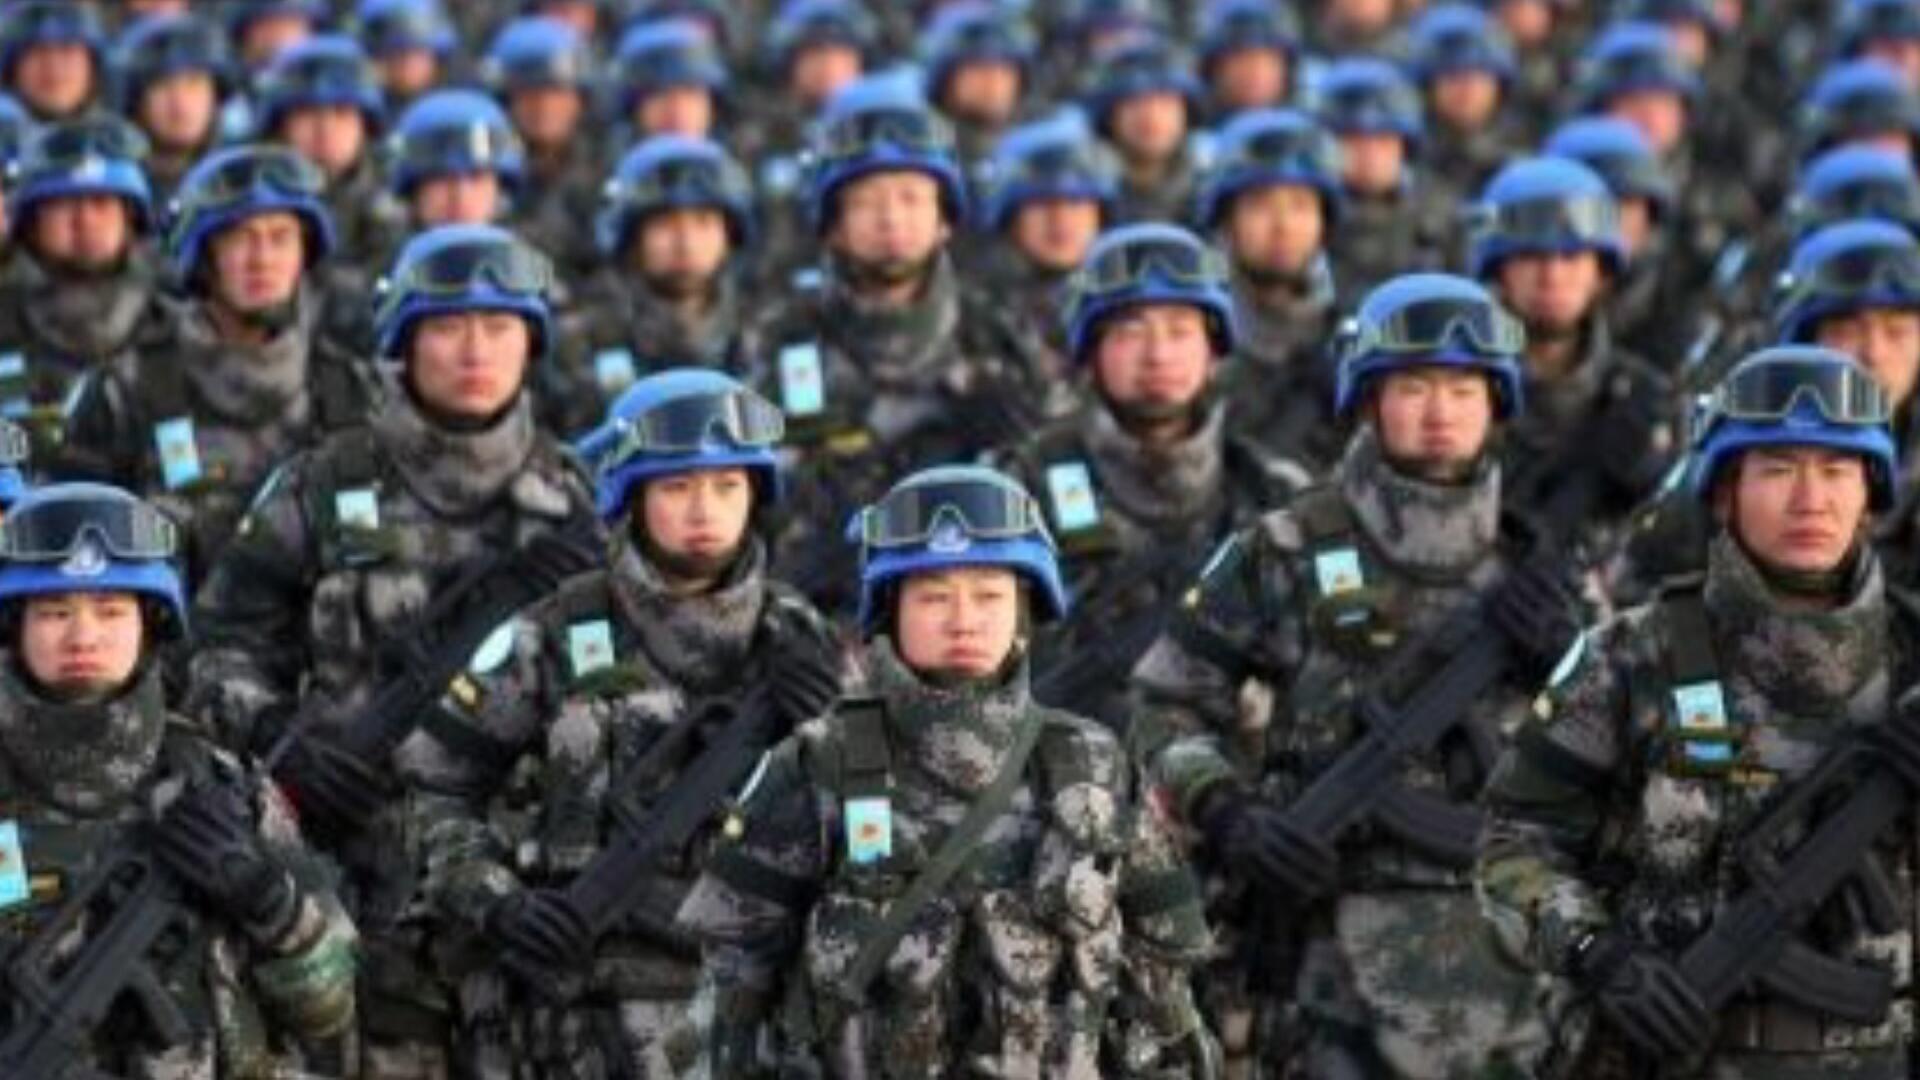 每日一词∣联合国维和行动 UN peacekeeping operations - Chinadaily.com.cn